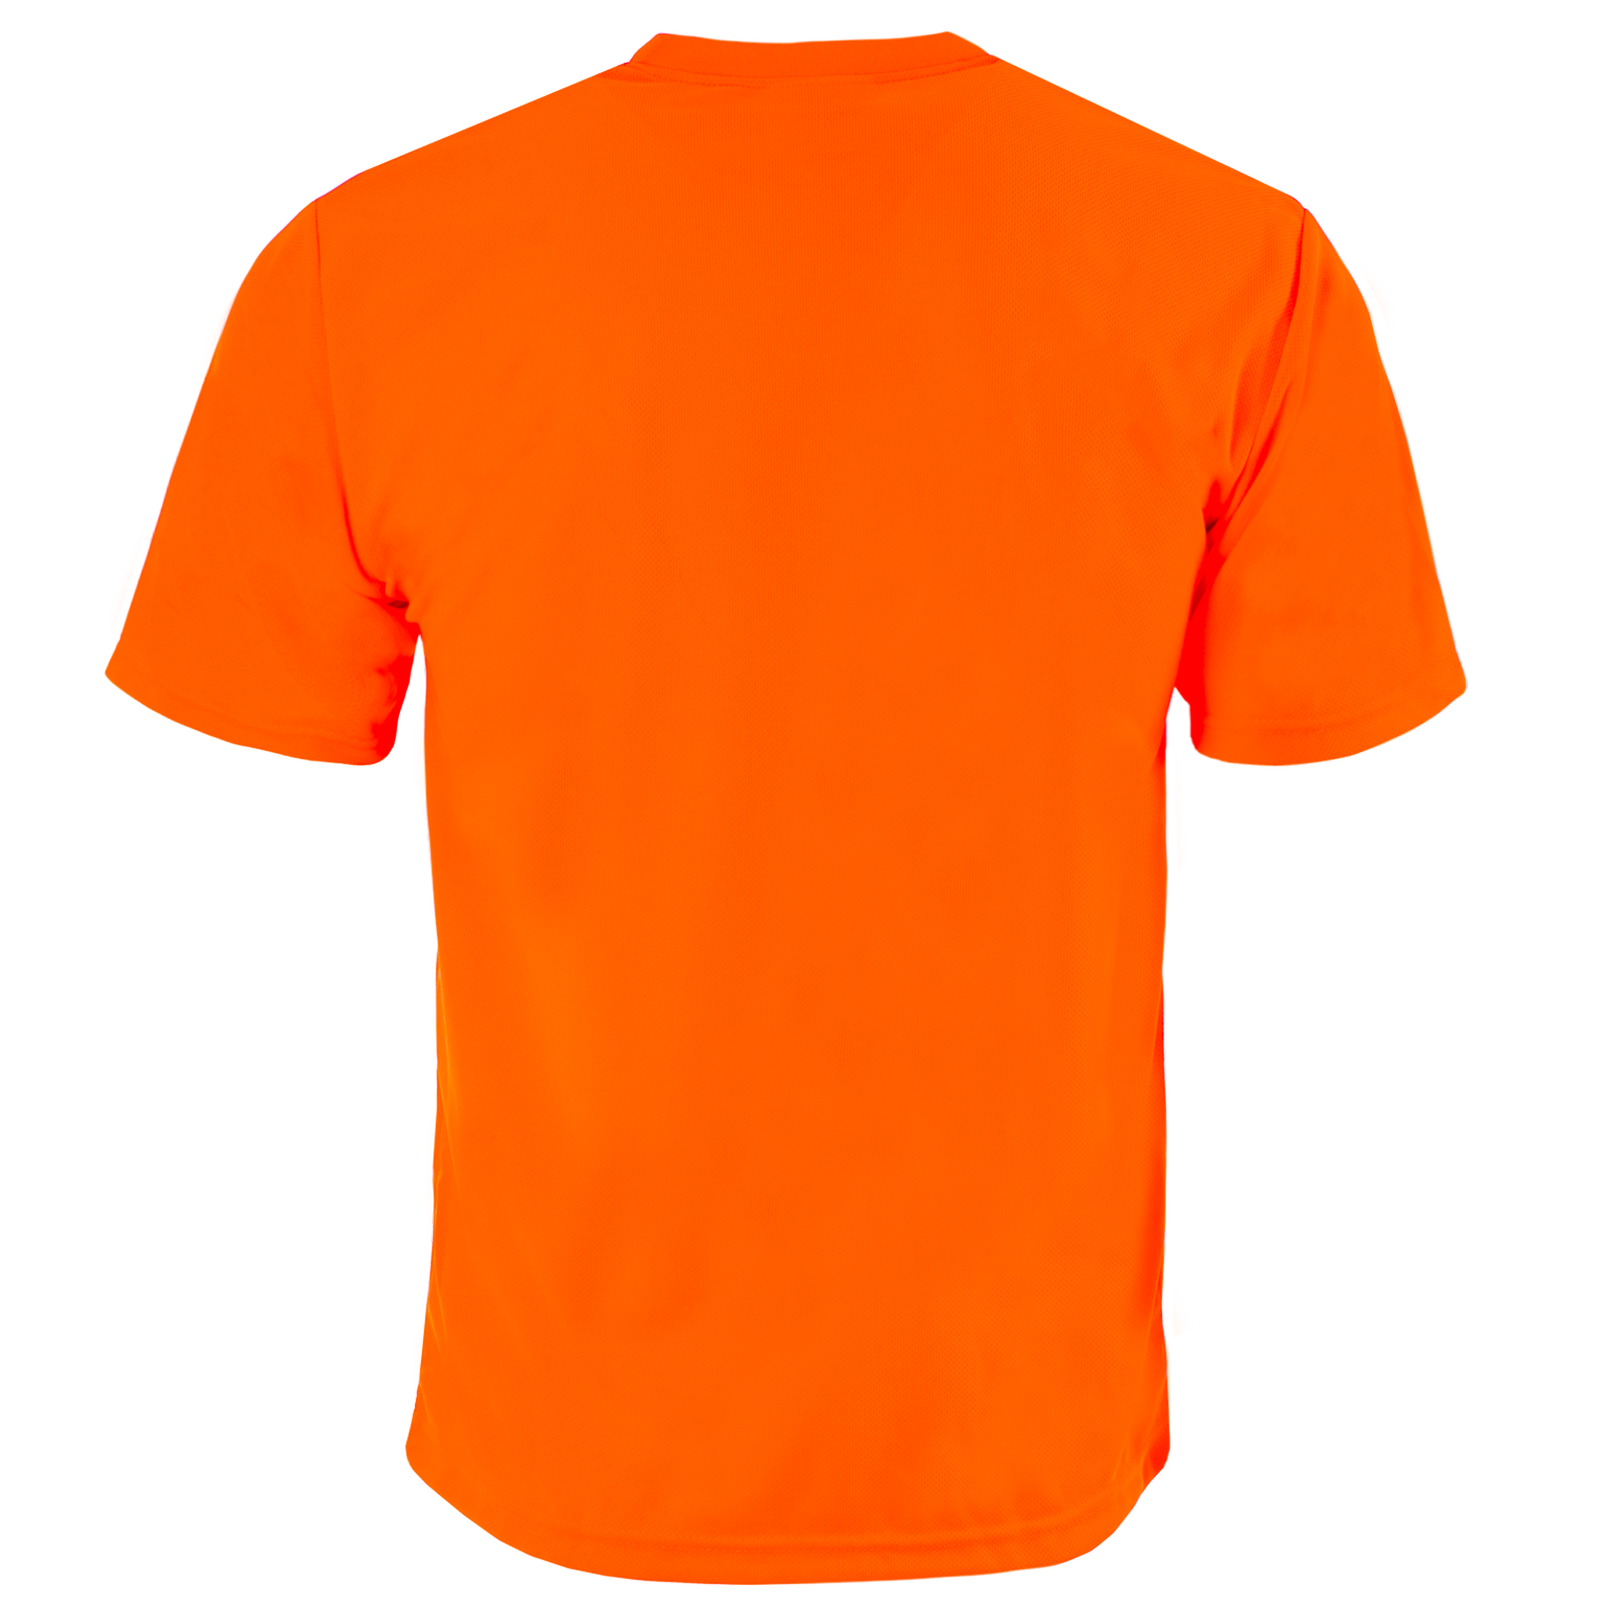 back view  of the Hi-Vis orange short sleeve safety pocket shirt